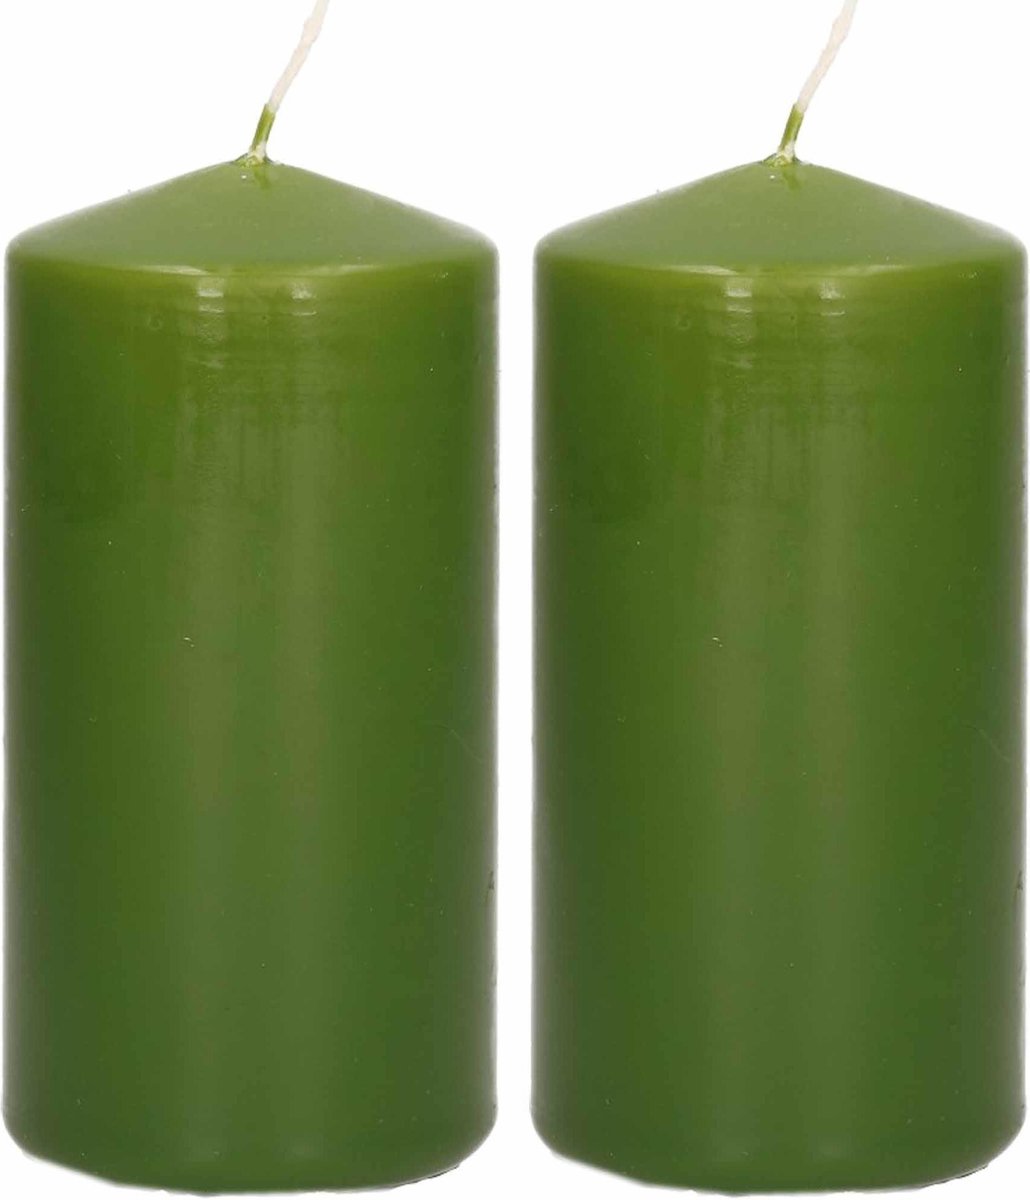 Trend Candles 2x Olijfe Cilinderkaarsen/stompkaarsen 5 X 10 Cm 23 Branduren - Geurloze Kaarsen Olijf - Woondecoraties - Groen